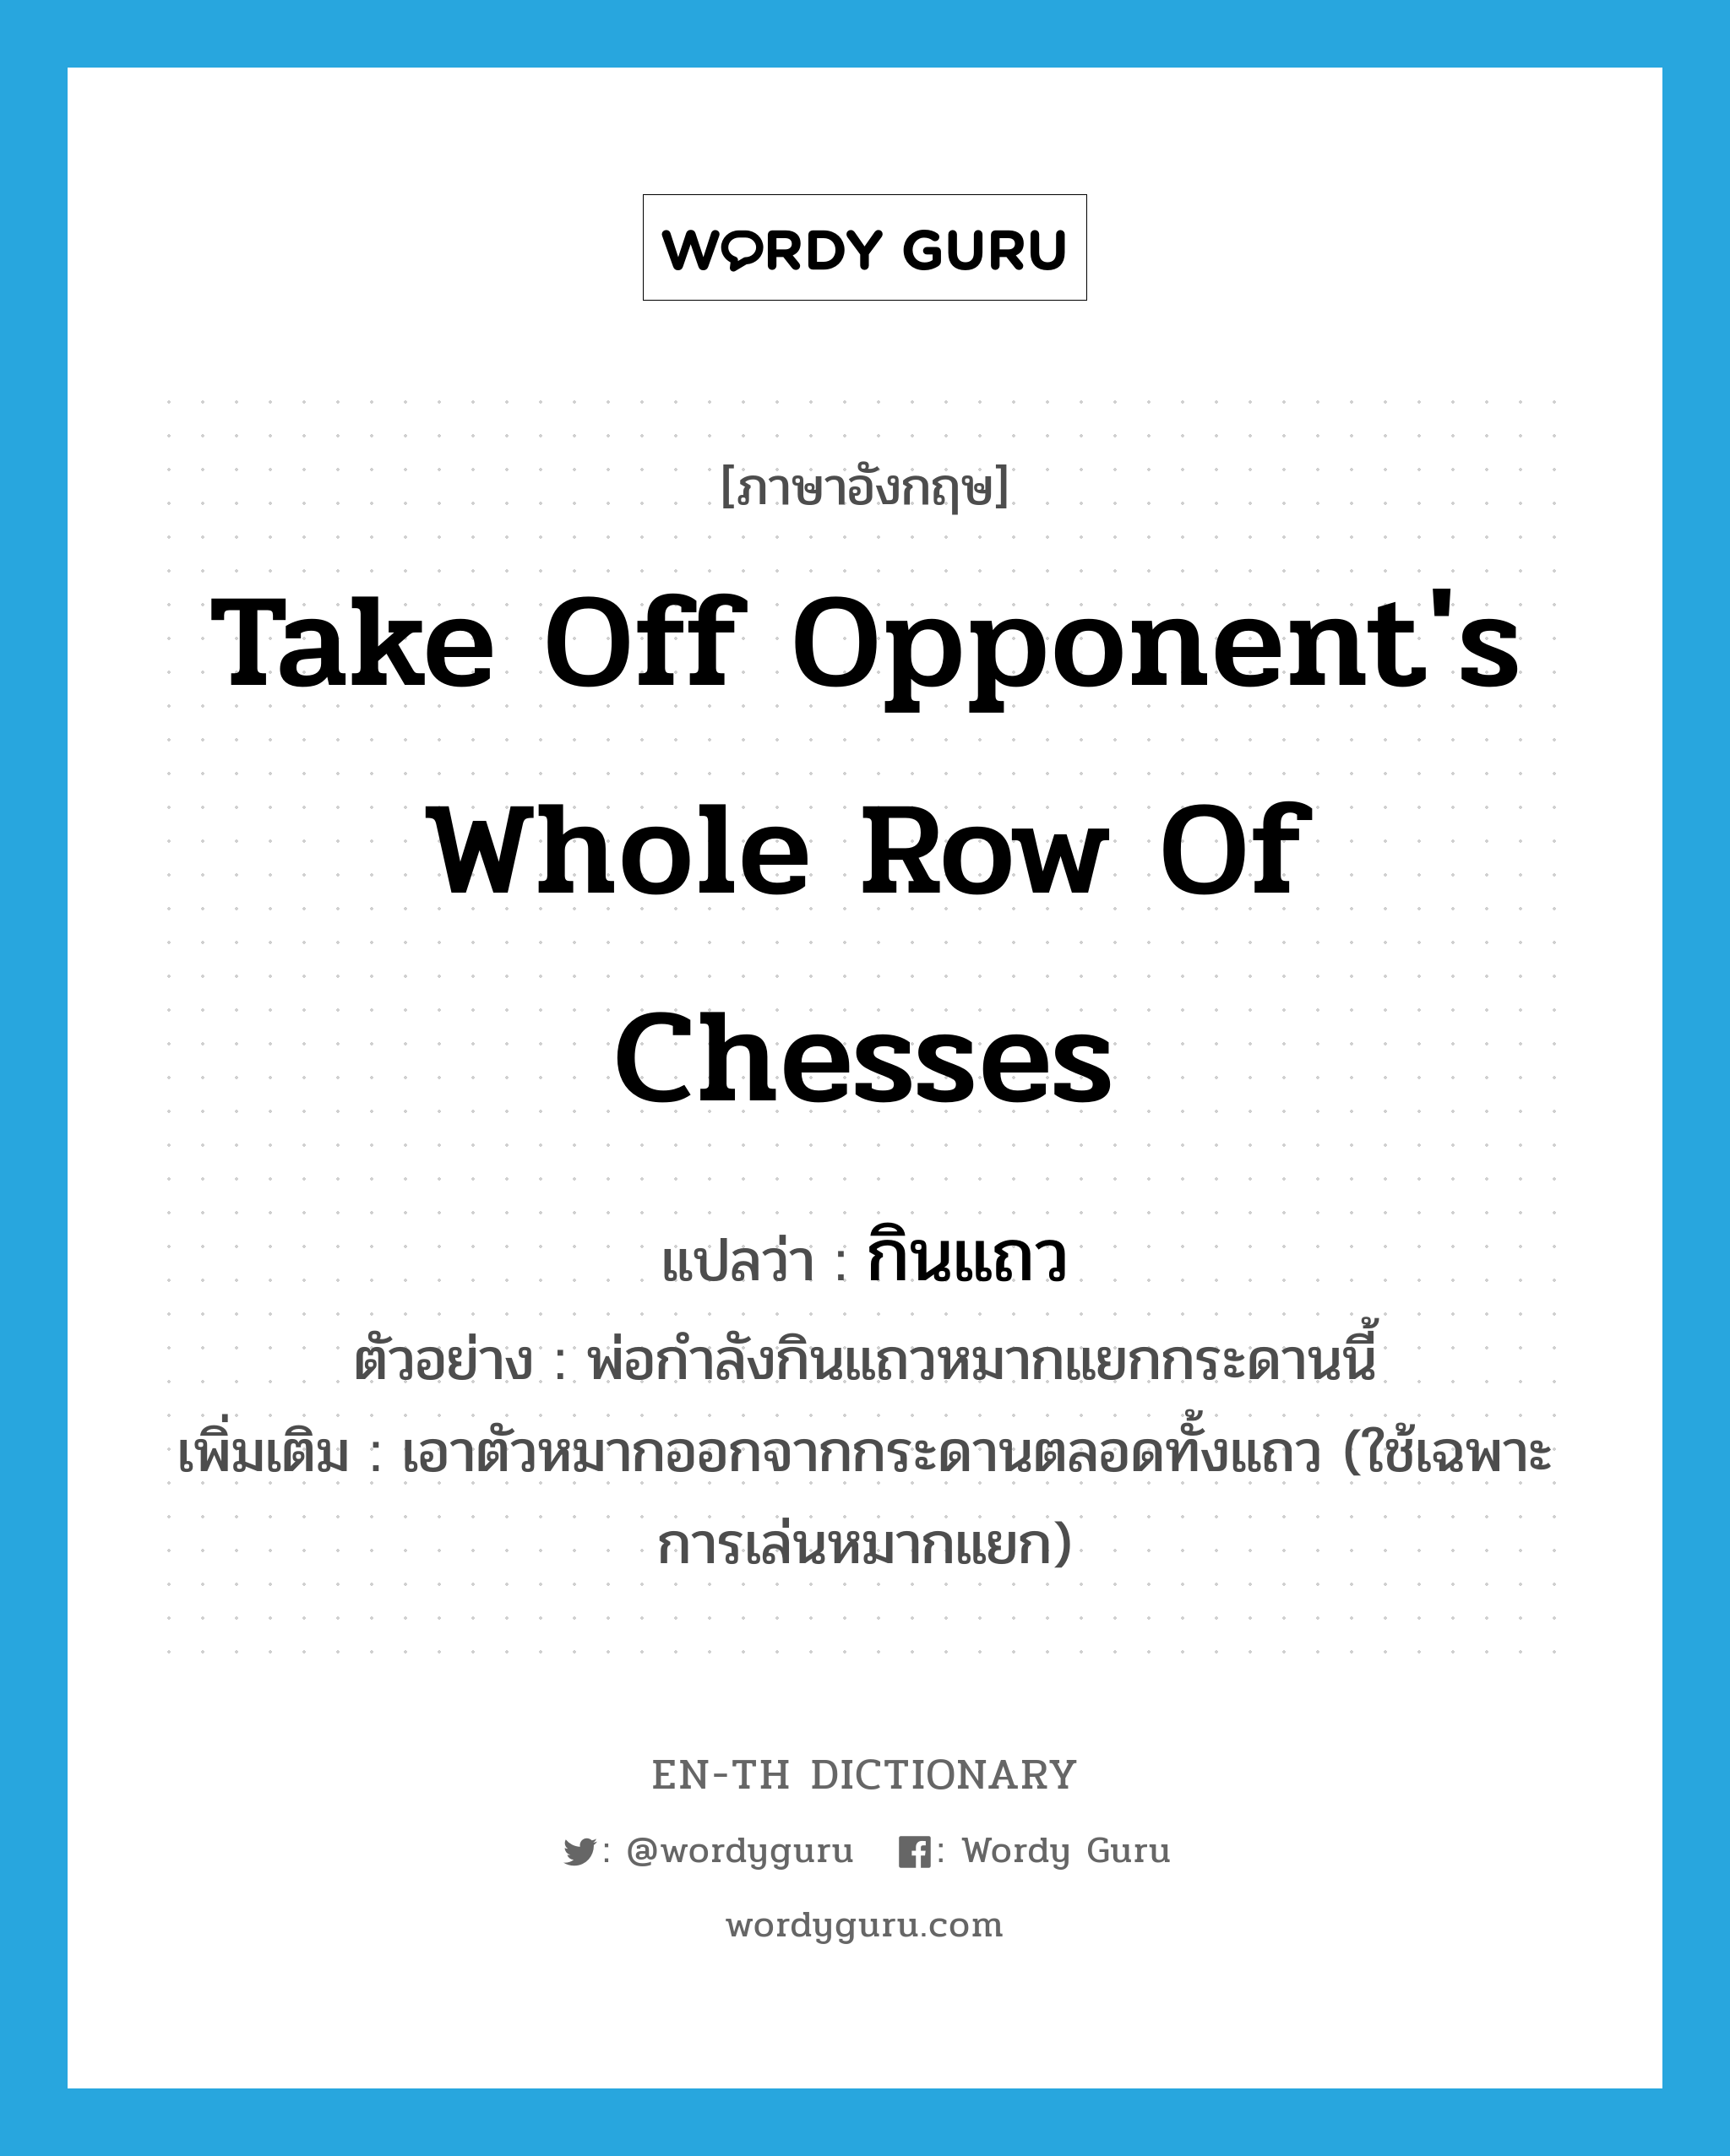 take off opponent's whole row of chesses แปลว่า?, คำศัพท์ภาษาอังกฤษ take off opponent's whole row of chesses แปลว่า กินแถว ประเภท V ตัวอย่าง พ่อกำลังกินแถวหมากแยกกระดานนี้ เพิ่มเติม เอาตัวหมากออกจากกระดานตลอดทั้งแถว (ใช้เฉพาะการเล่นหมากแยก) หมวด V